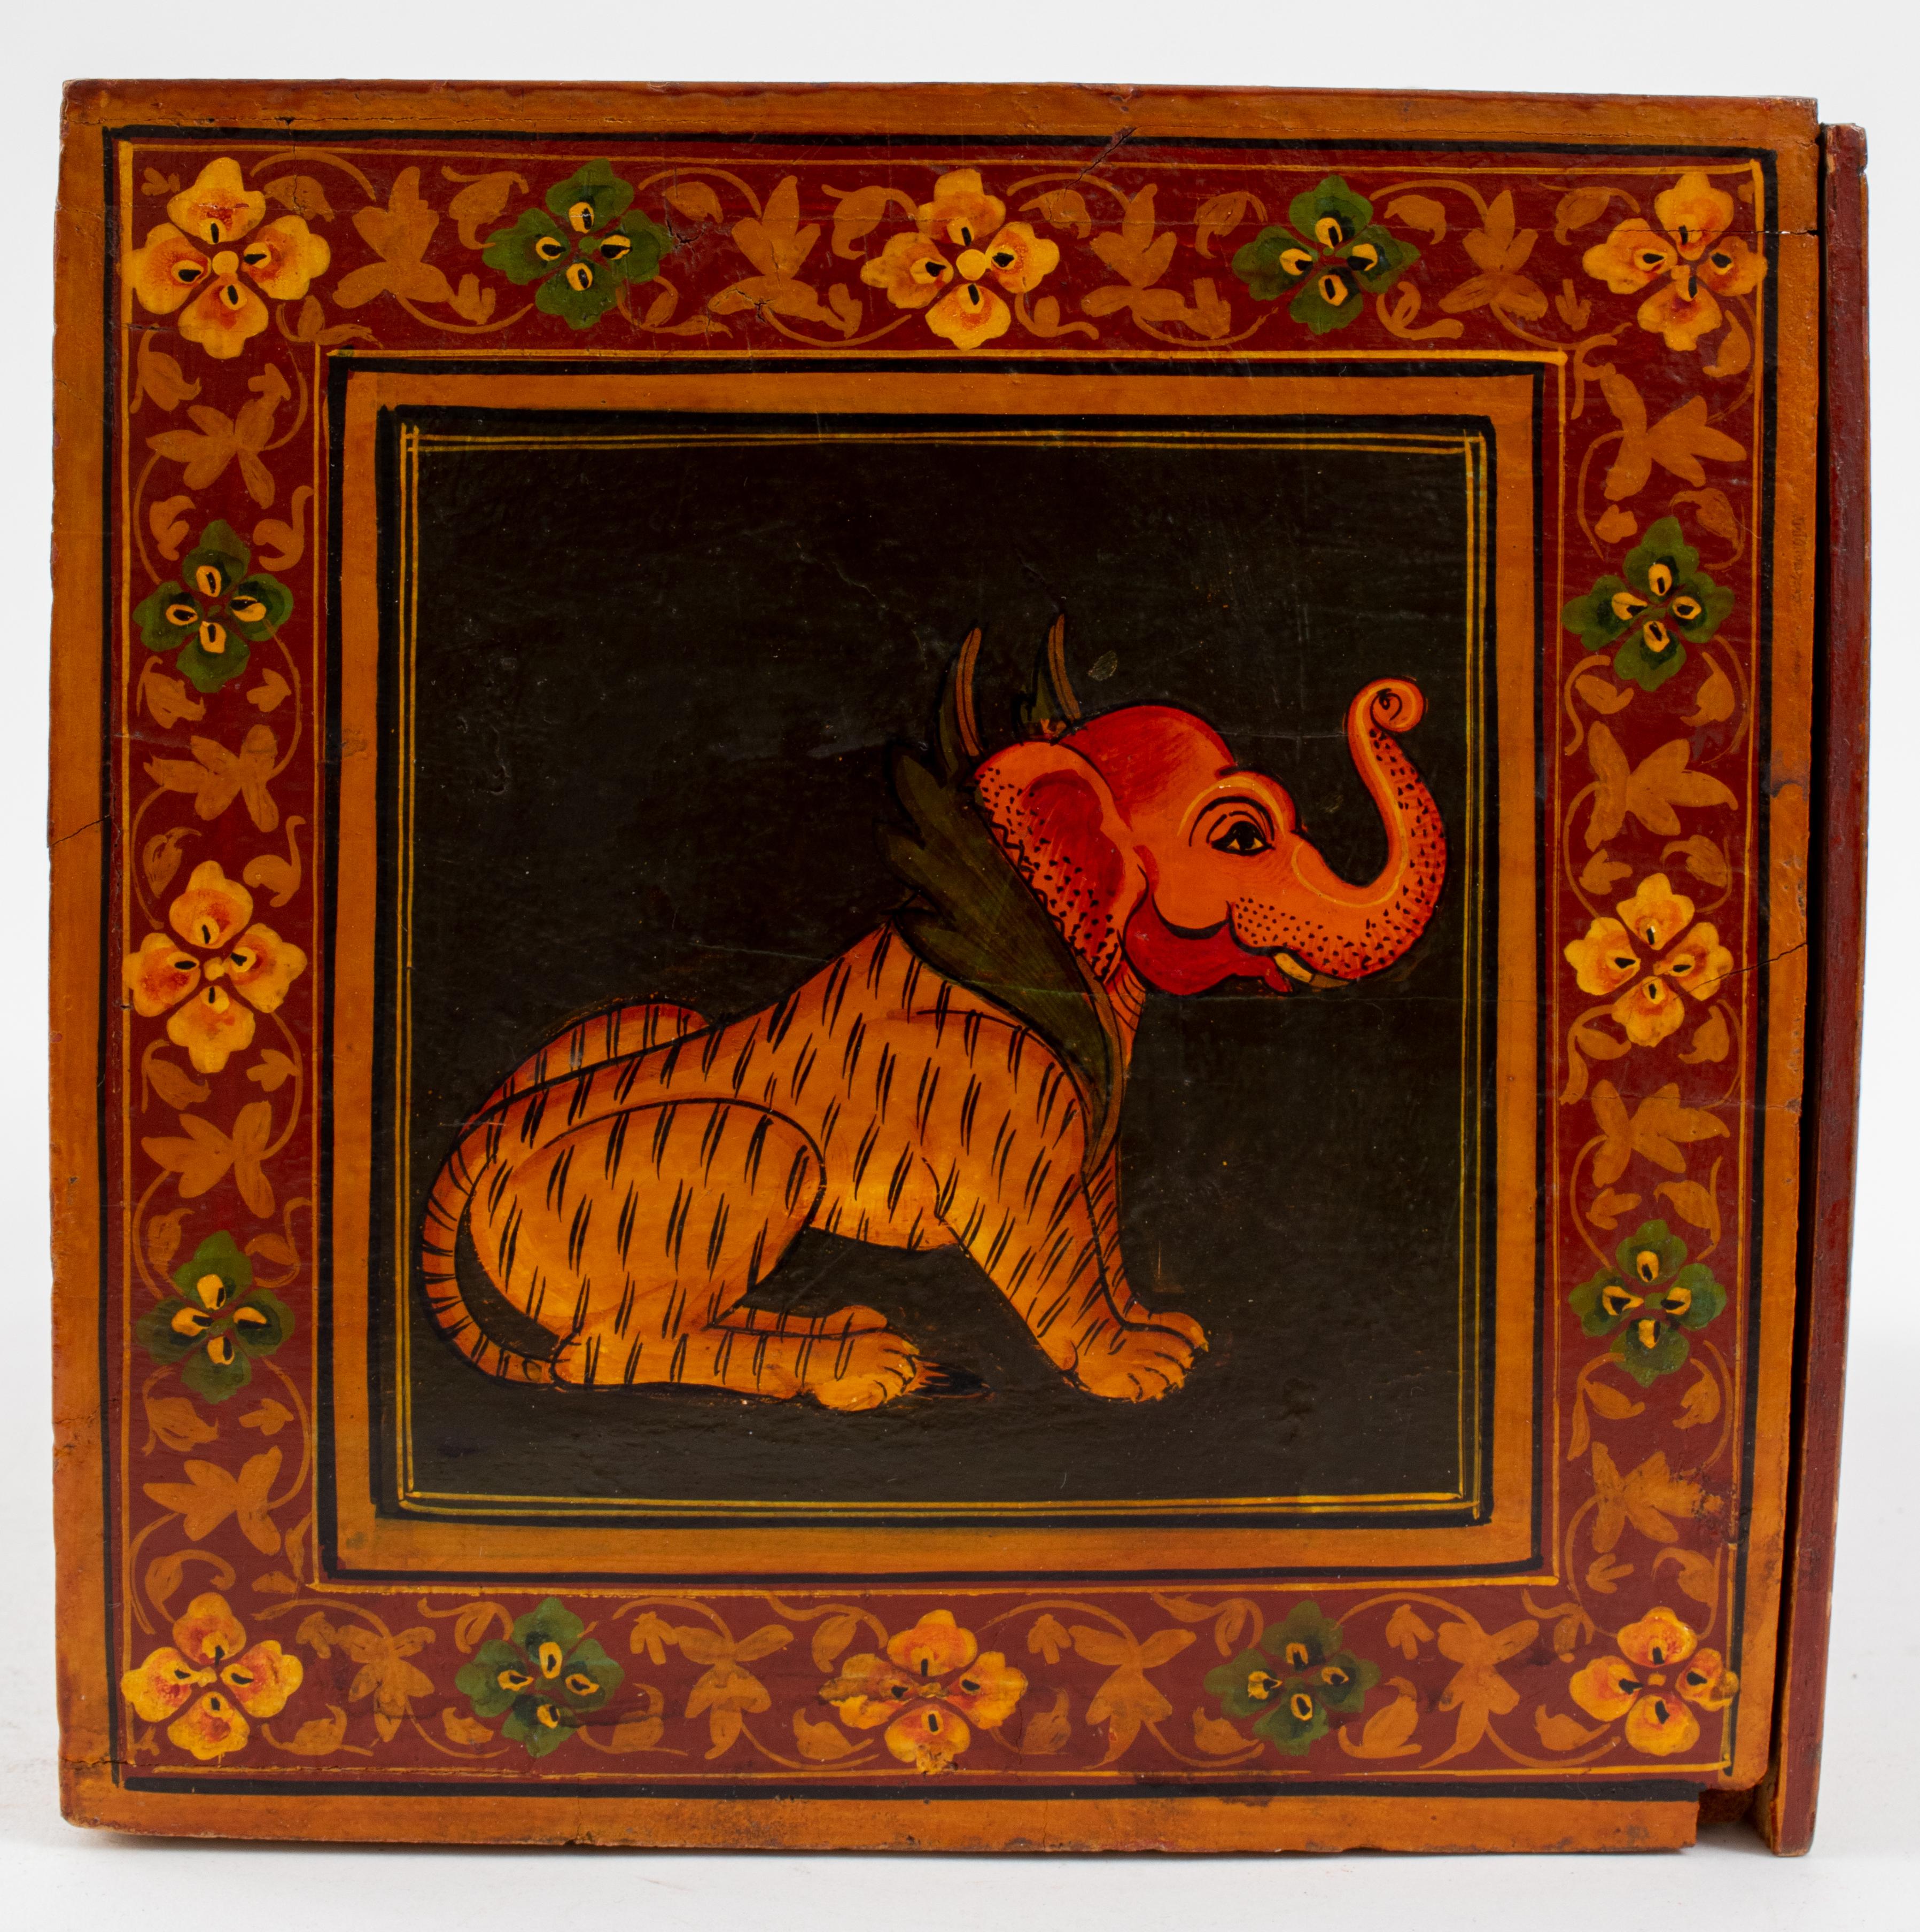 Boîte indienne en bois avec des images peintes à la main de chimères, Ganesh et une femme. La boîte s'ouvre pour révéler un grand tiroir et trois petits tiroirs. 
Les tiroirs présentent des accents métalliques. 
Mesures : 8